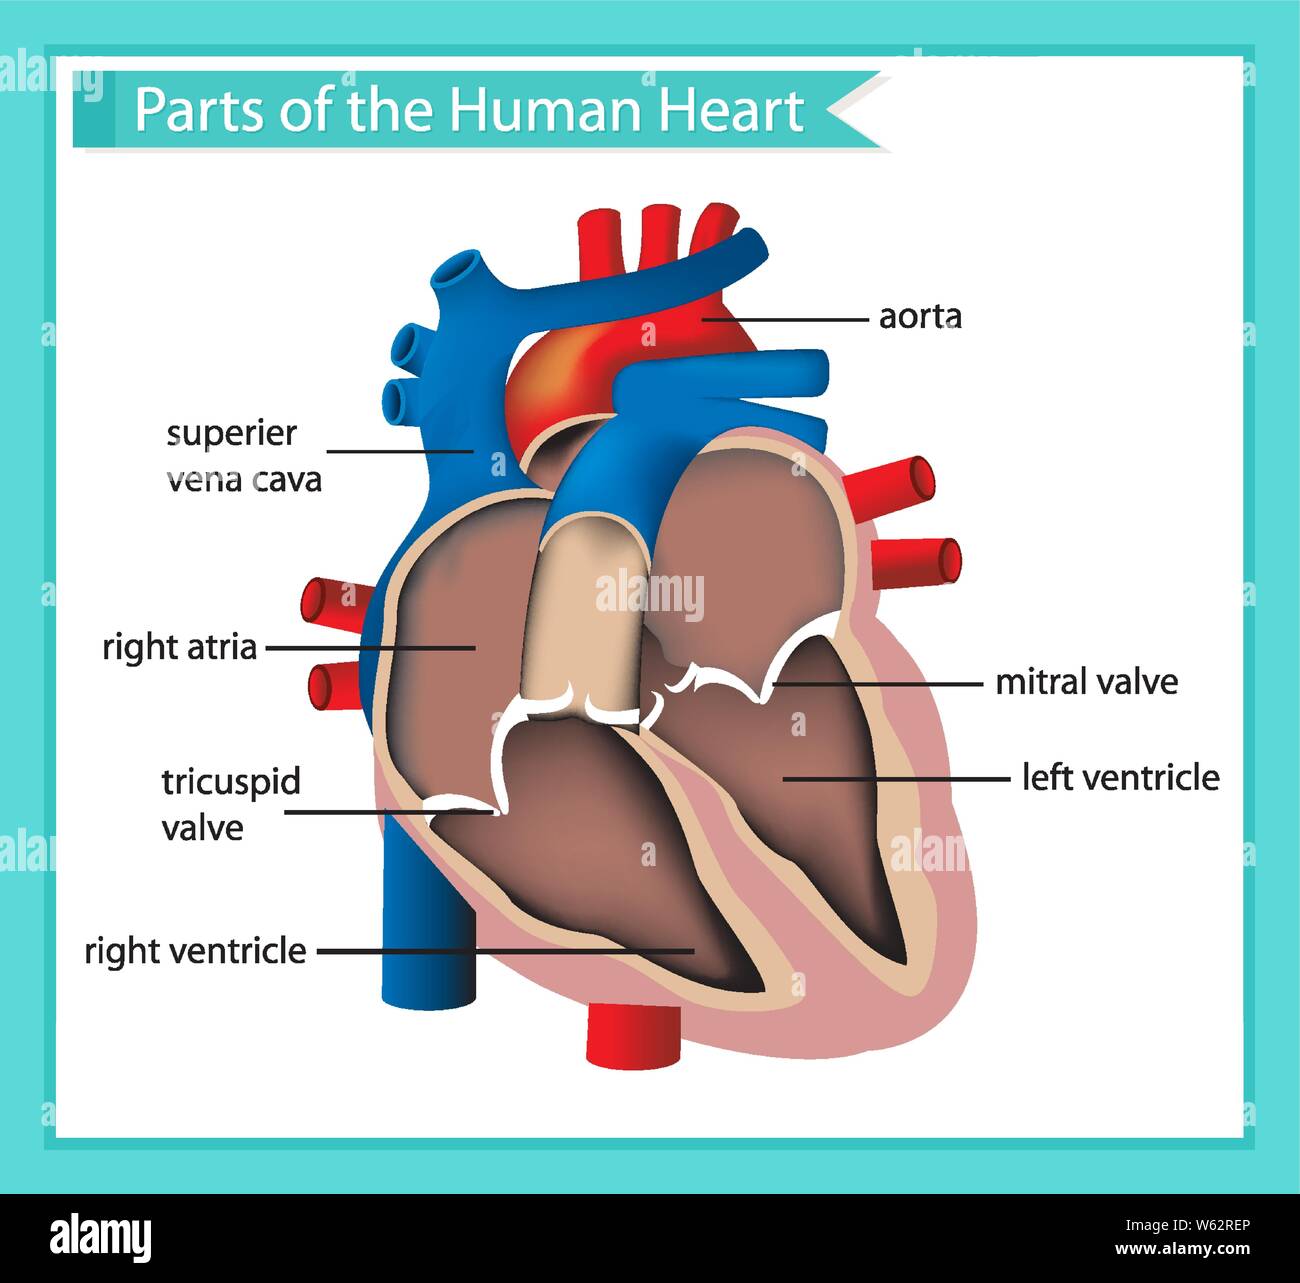 Medico scientifico illustrazione di parti del cuore umano illustrazione  Immagine e Vettoriale - Alamy